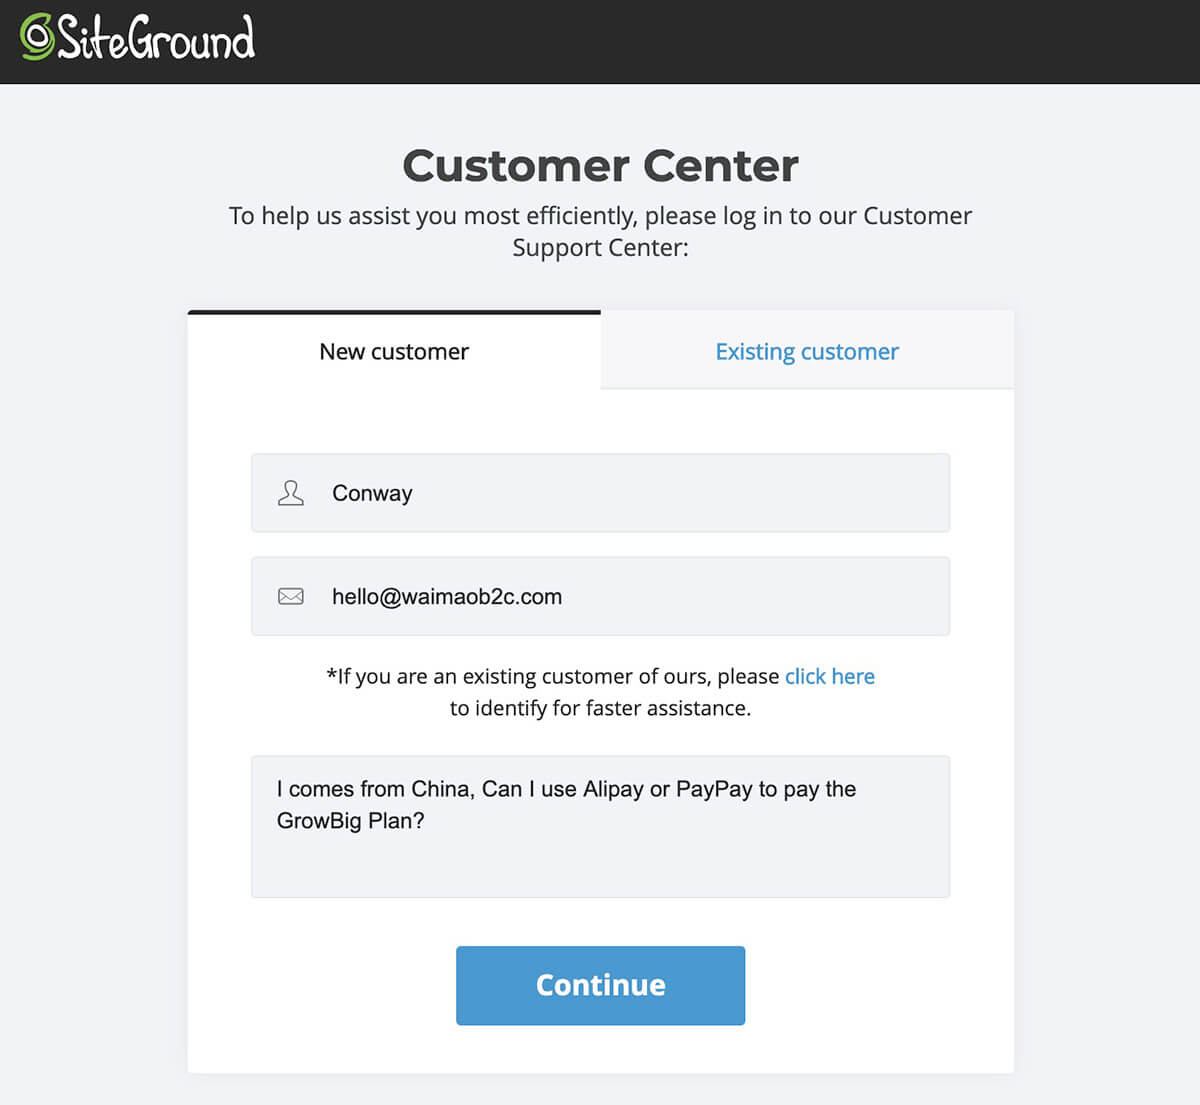 联系Siteground的在线客服使用PayPal支付Siteground主机费用